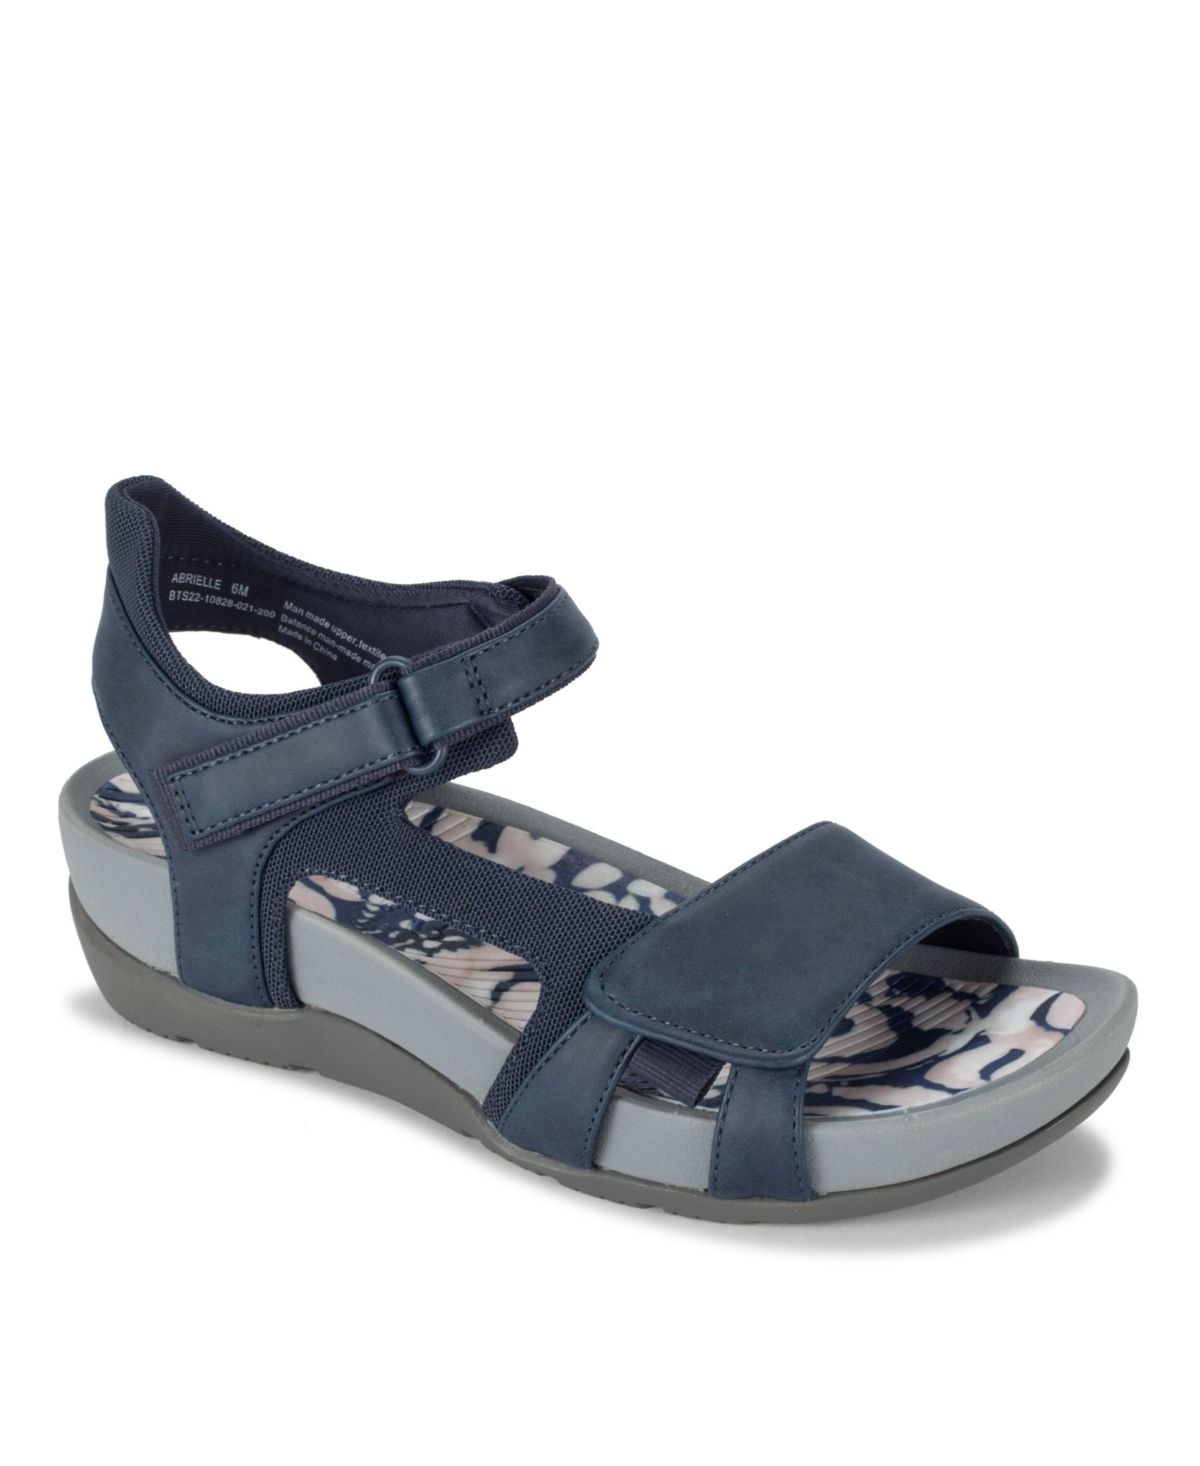 Baretraps Women's Abrielle Sporty Sandals Women's Shoes In Navy Blue